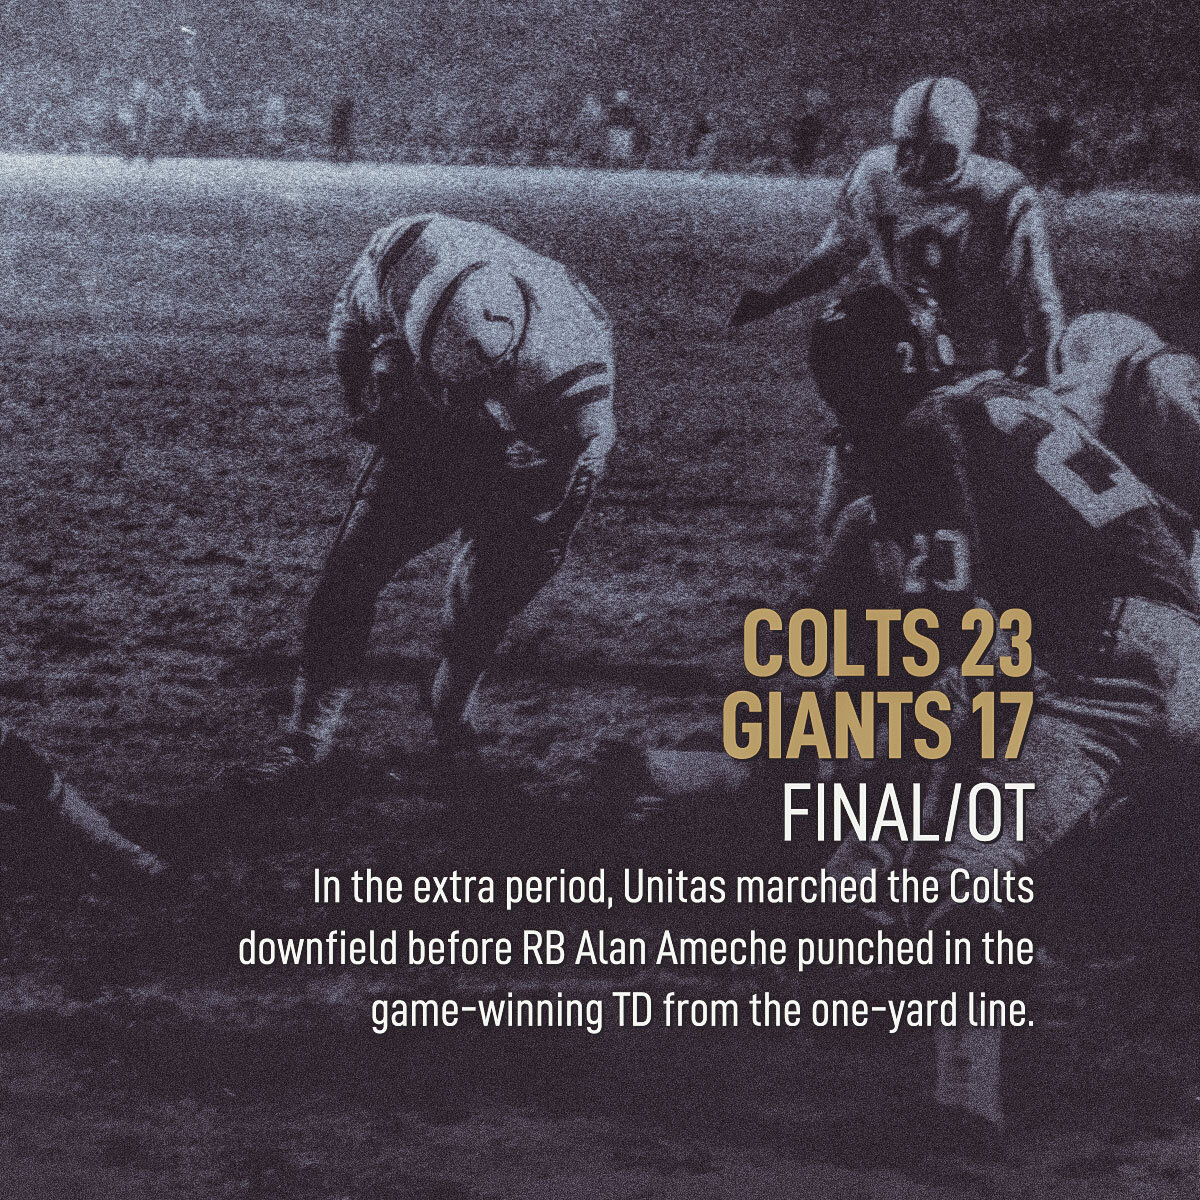 190923_NFL_GreatestGames_ColtsGiants_Carousel_SO_05.jpg